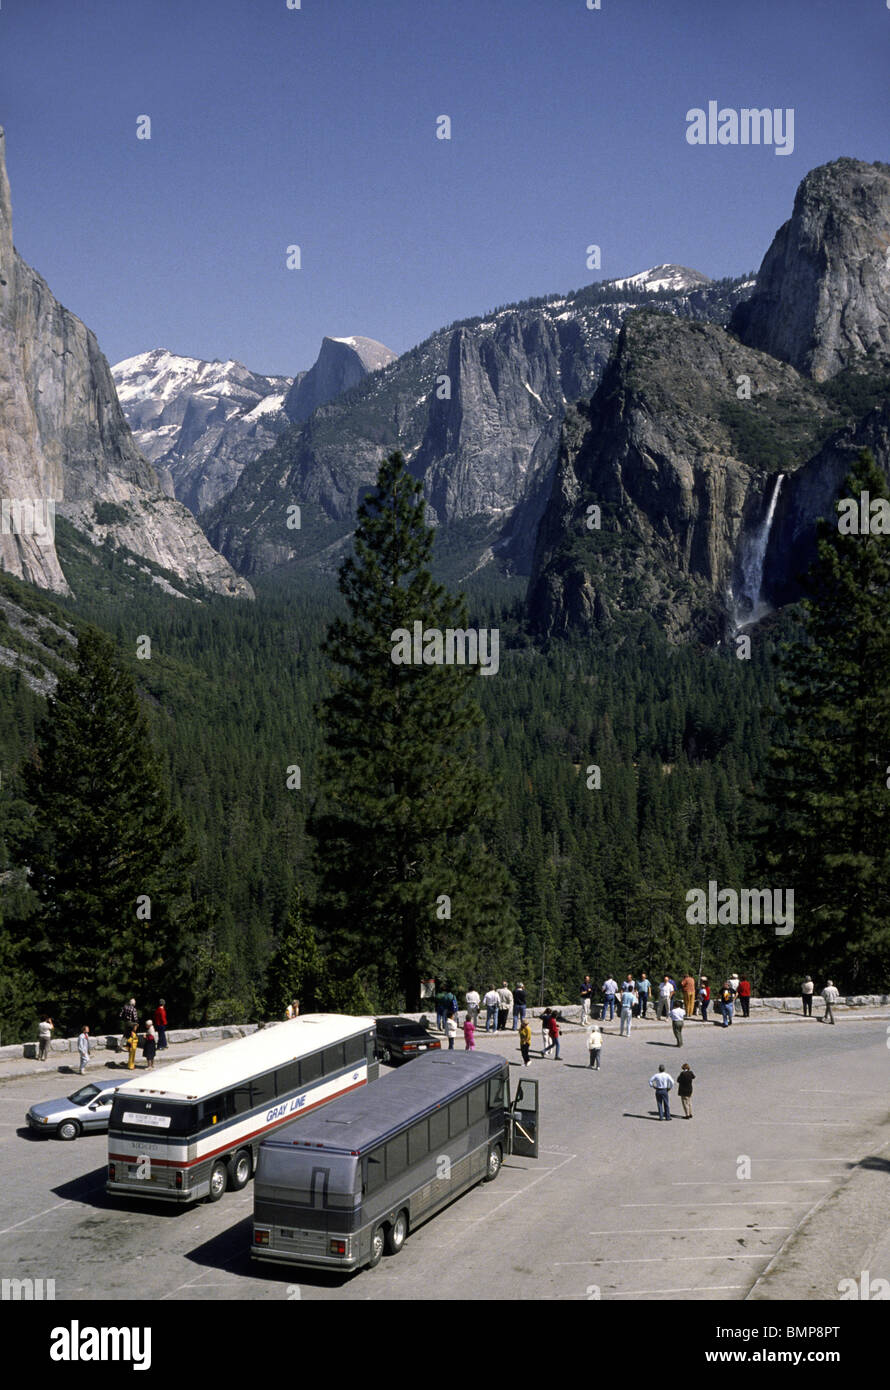 Yosemite National Park visité par les bus touristiques et charte avec chutes d'eau et demi dôme dans la distance. Banque D'Images